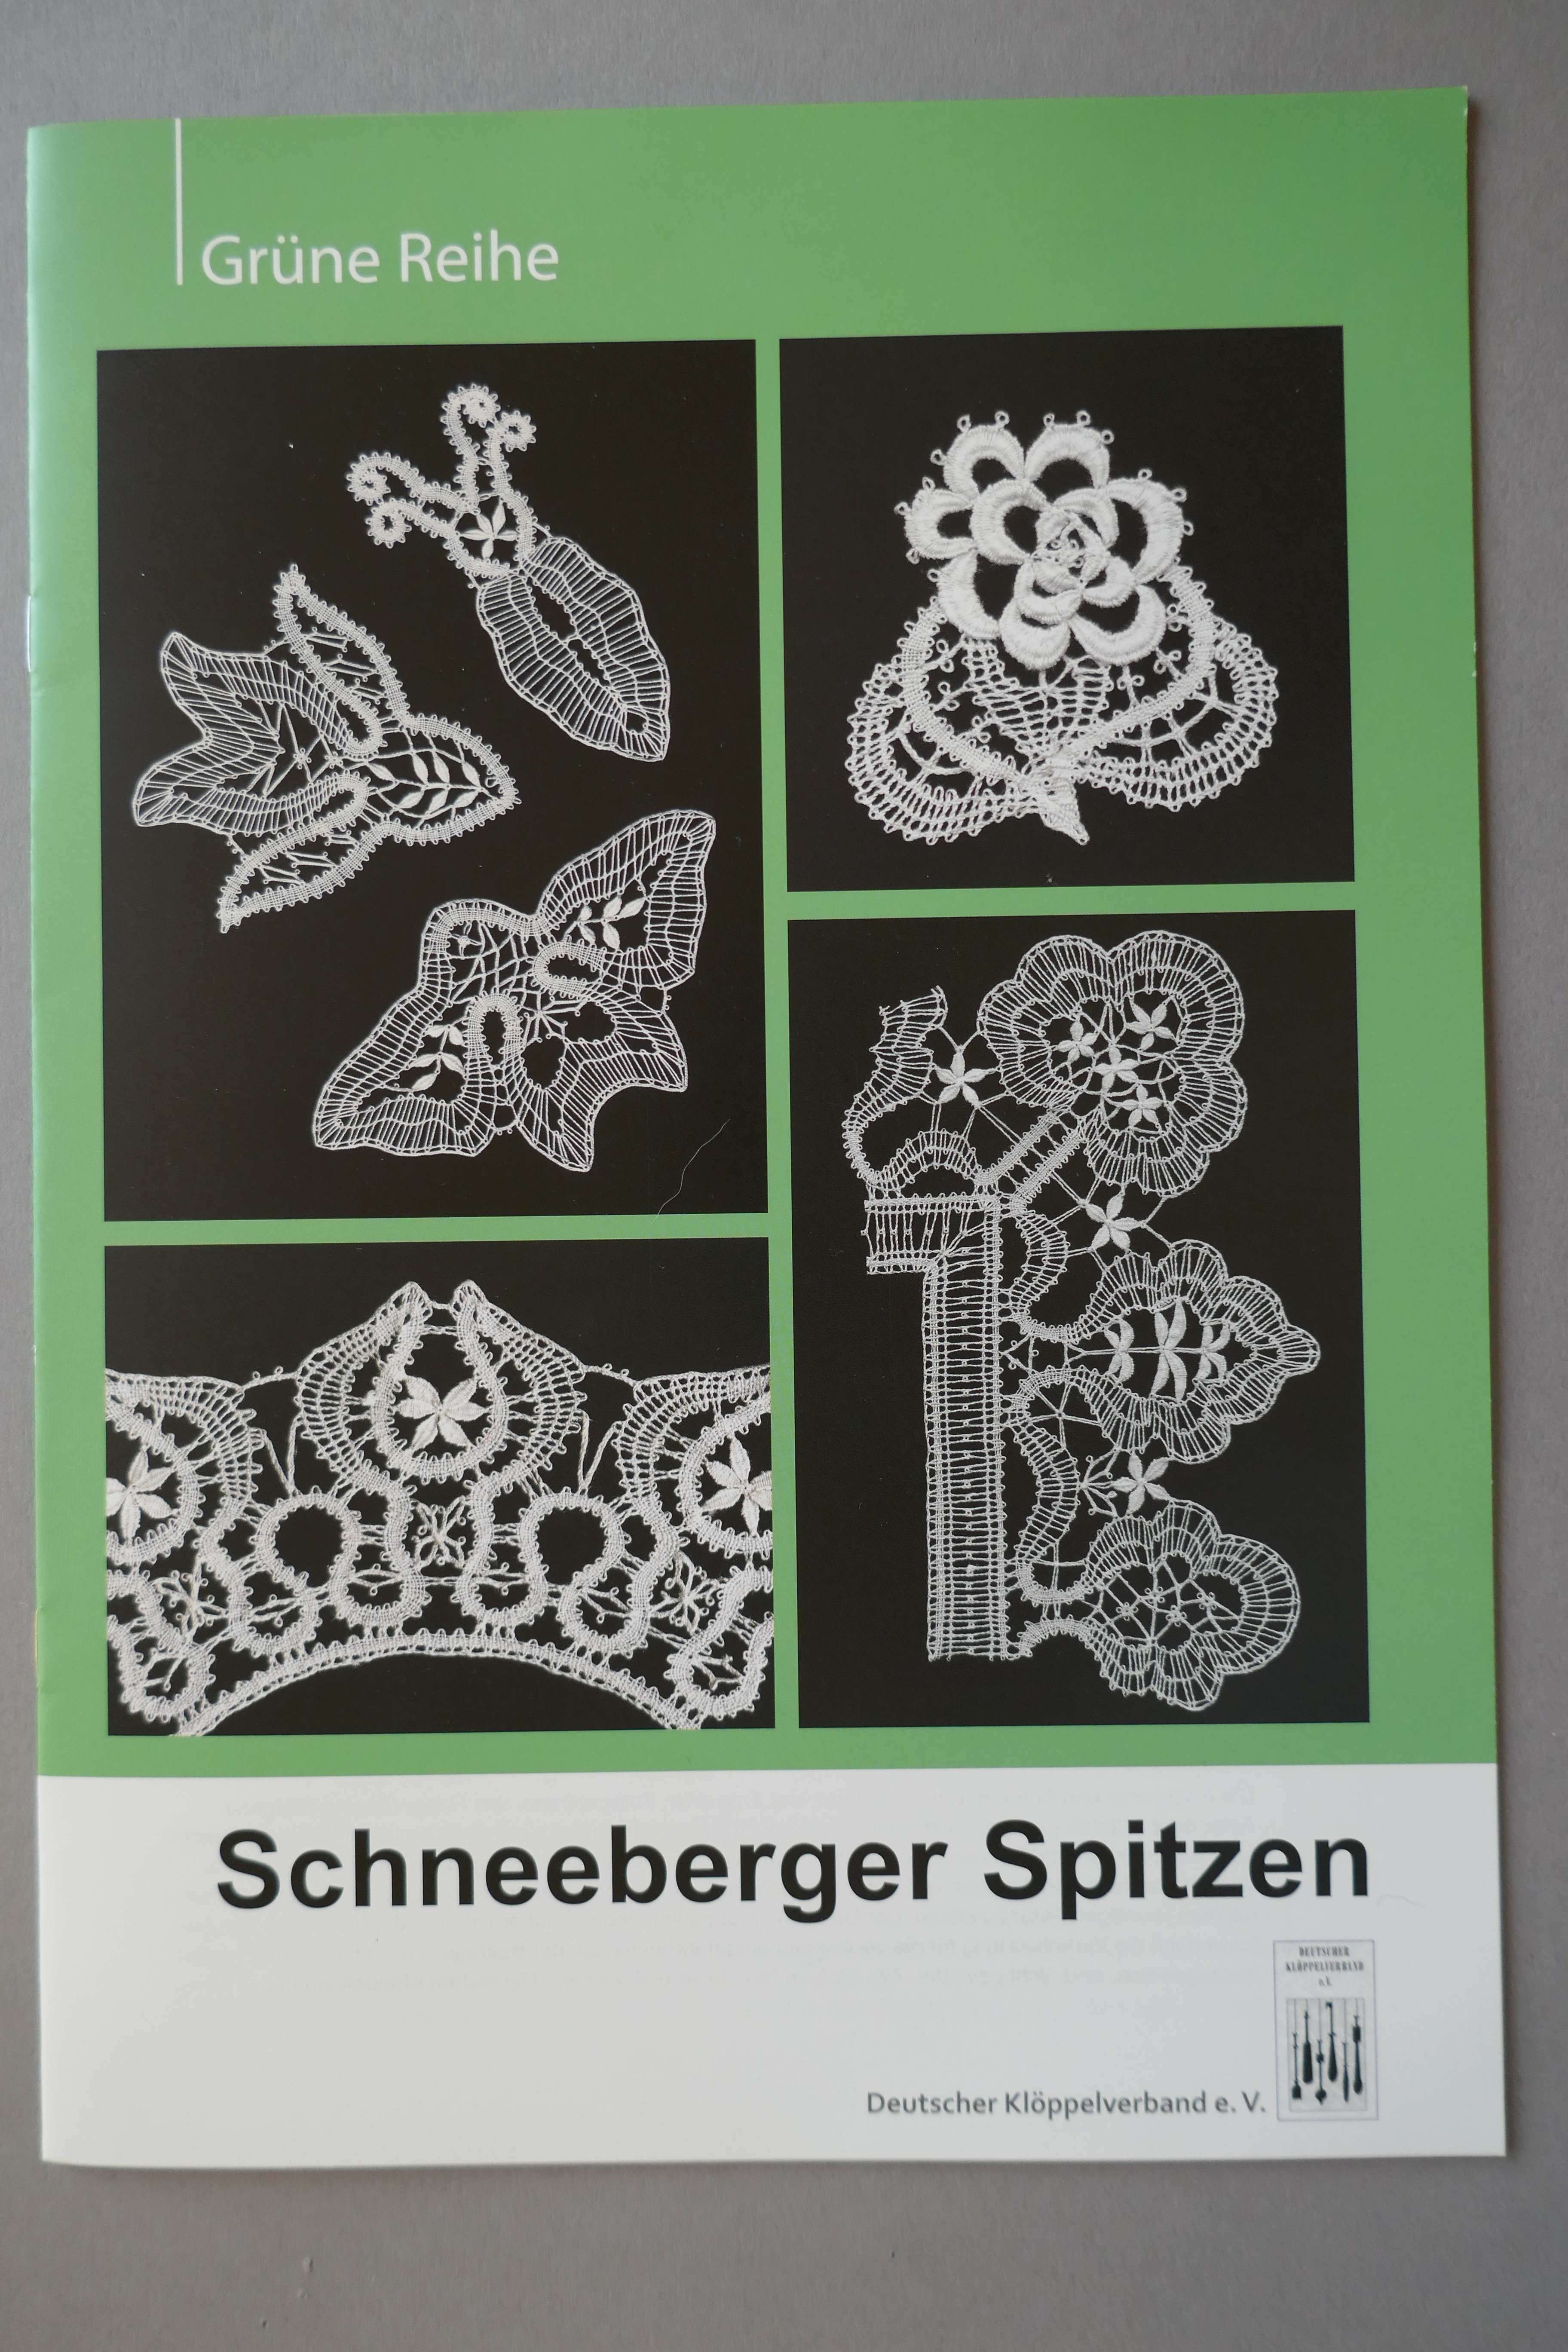 Schneeberger Spitzen (grüne Reihe)